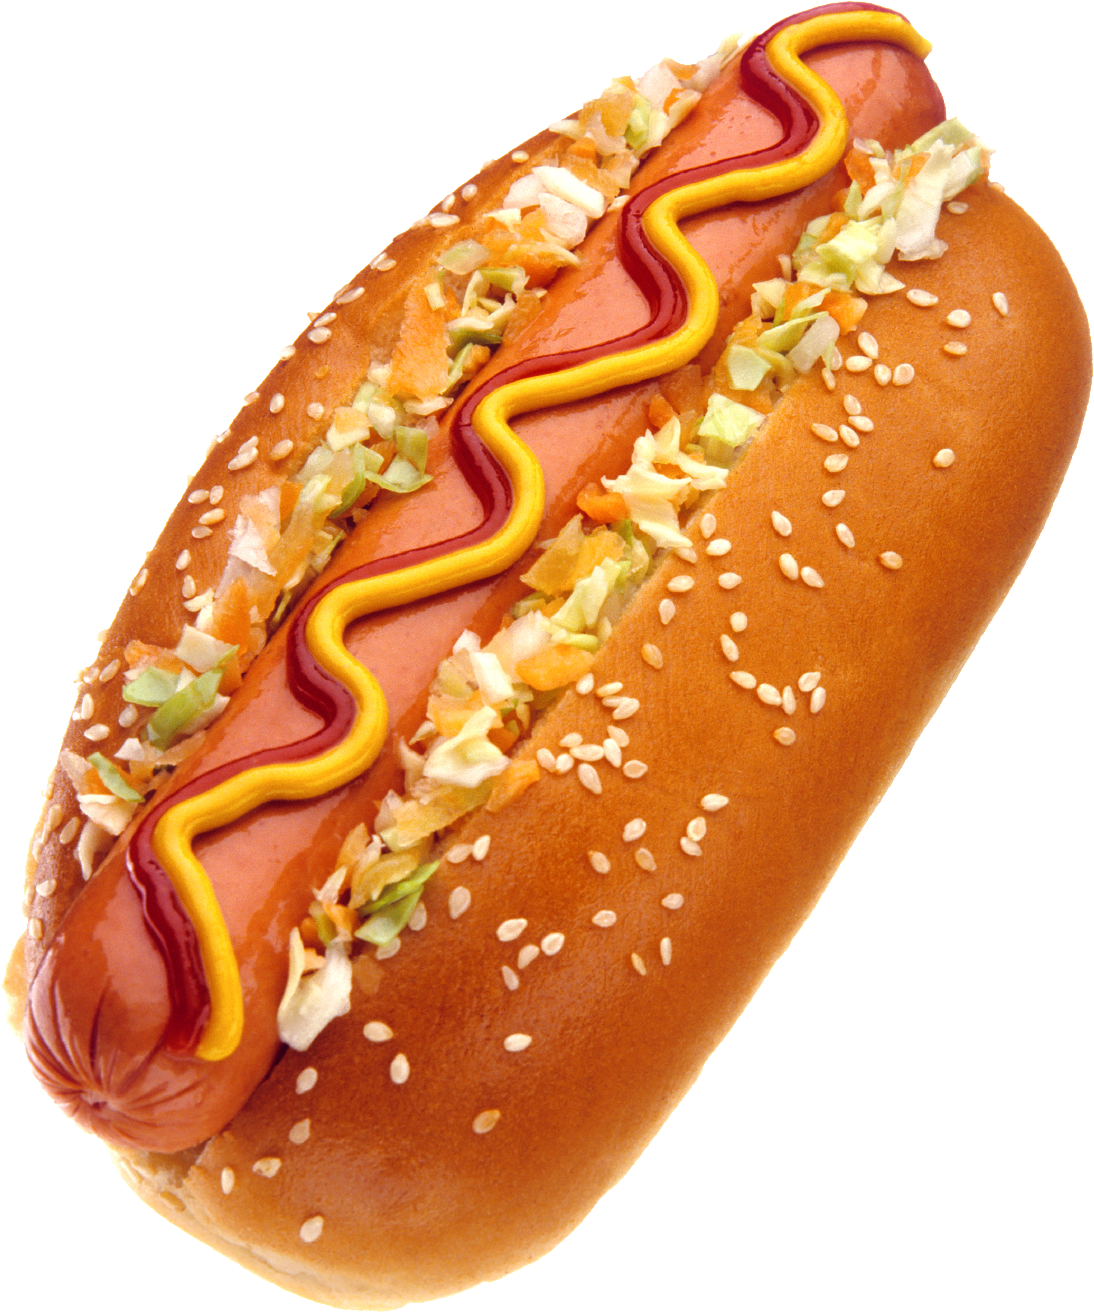 PNG Hot Dog - 68167